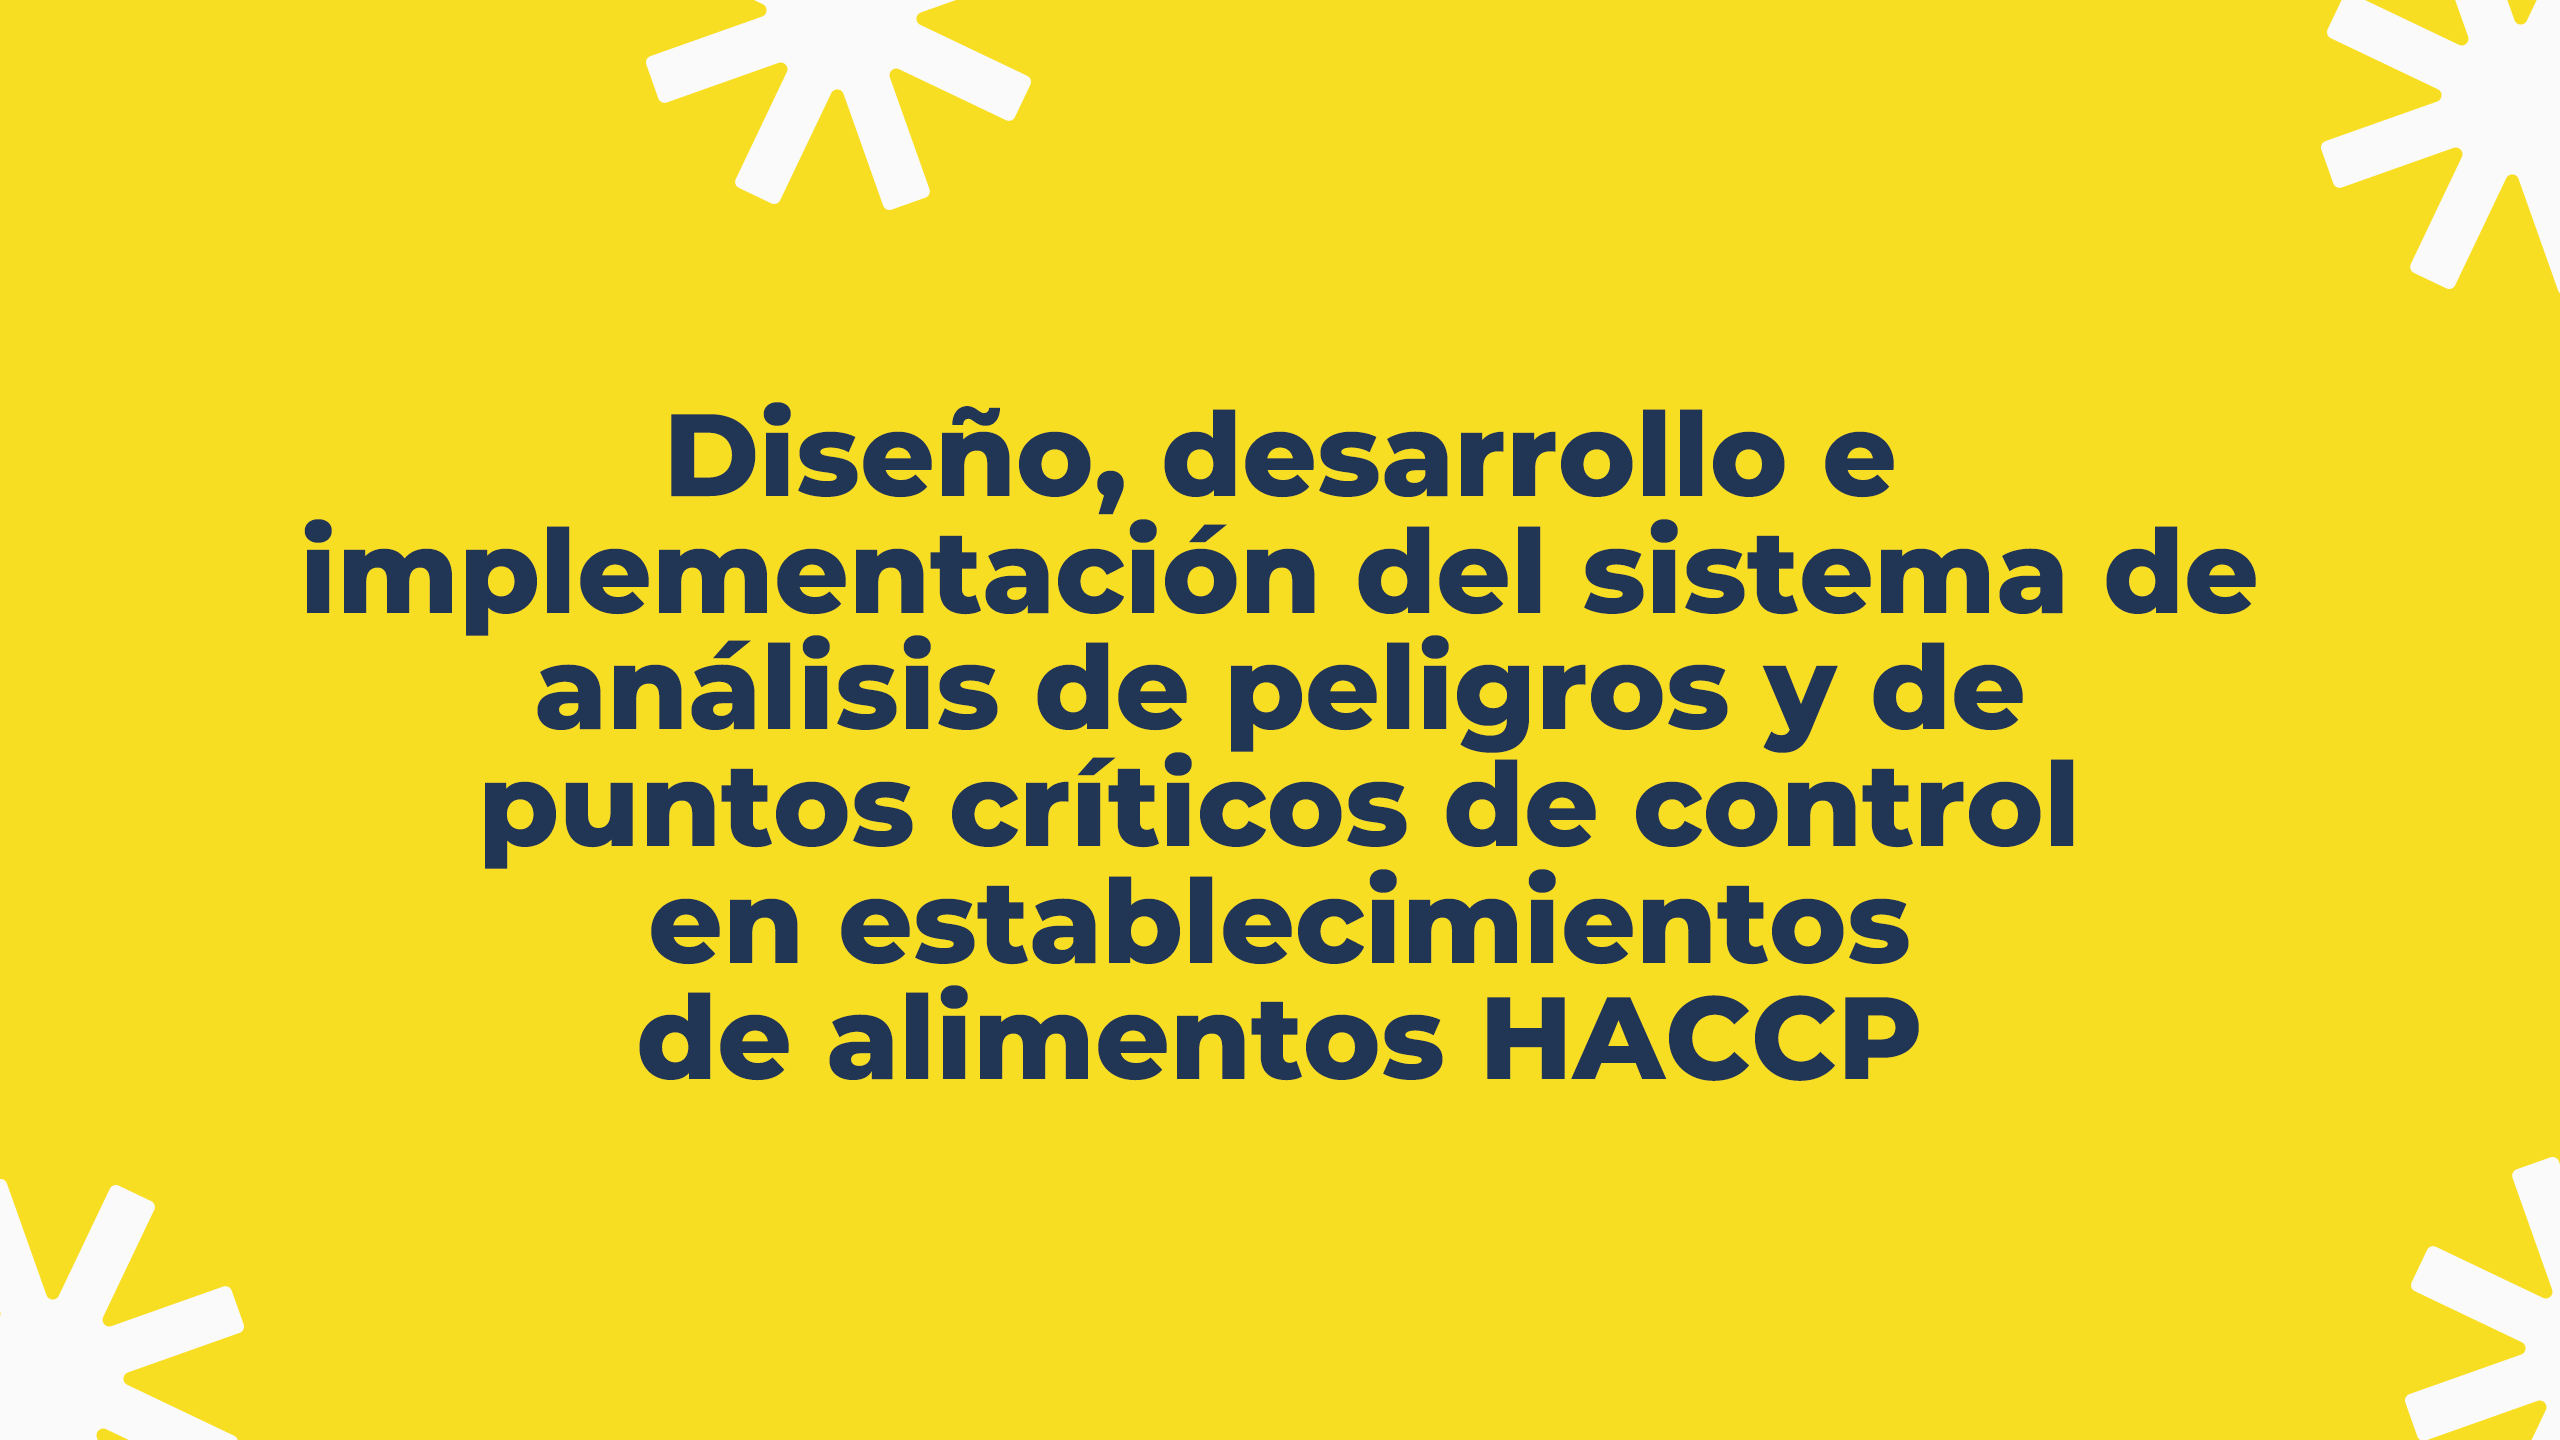 Herramientas de implementación de un Sistema de Análisis de Peligros y Puntos Críticos de Control en establecimientos de alimentos HACCP